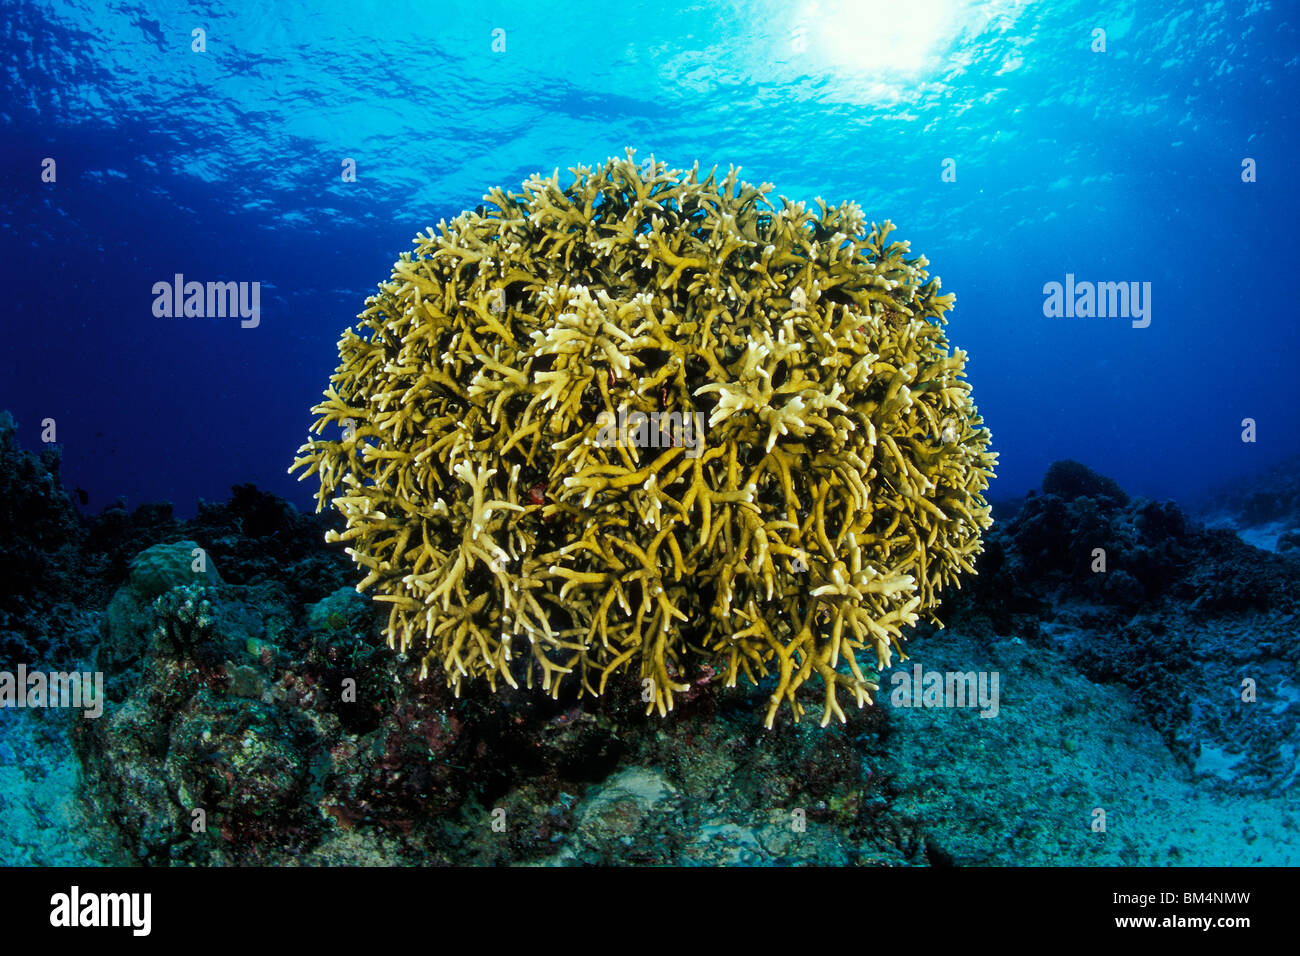 Fire Corals atTubbataha Reef, Millepora tenella, North Atoll, Sulu Sea, Philippines Stock Photo